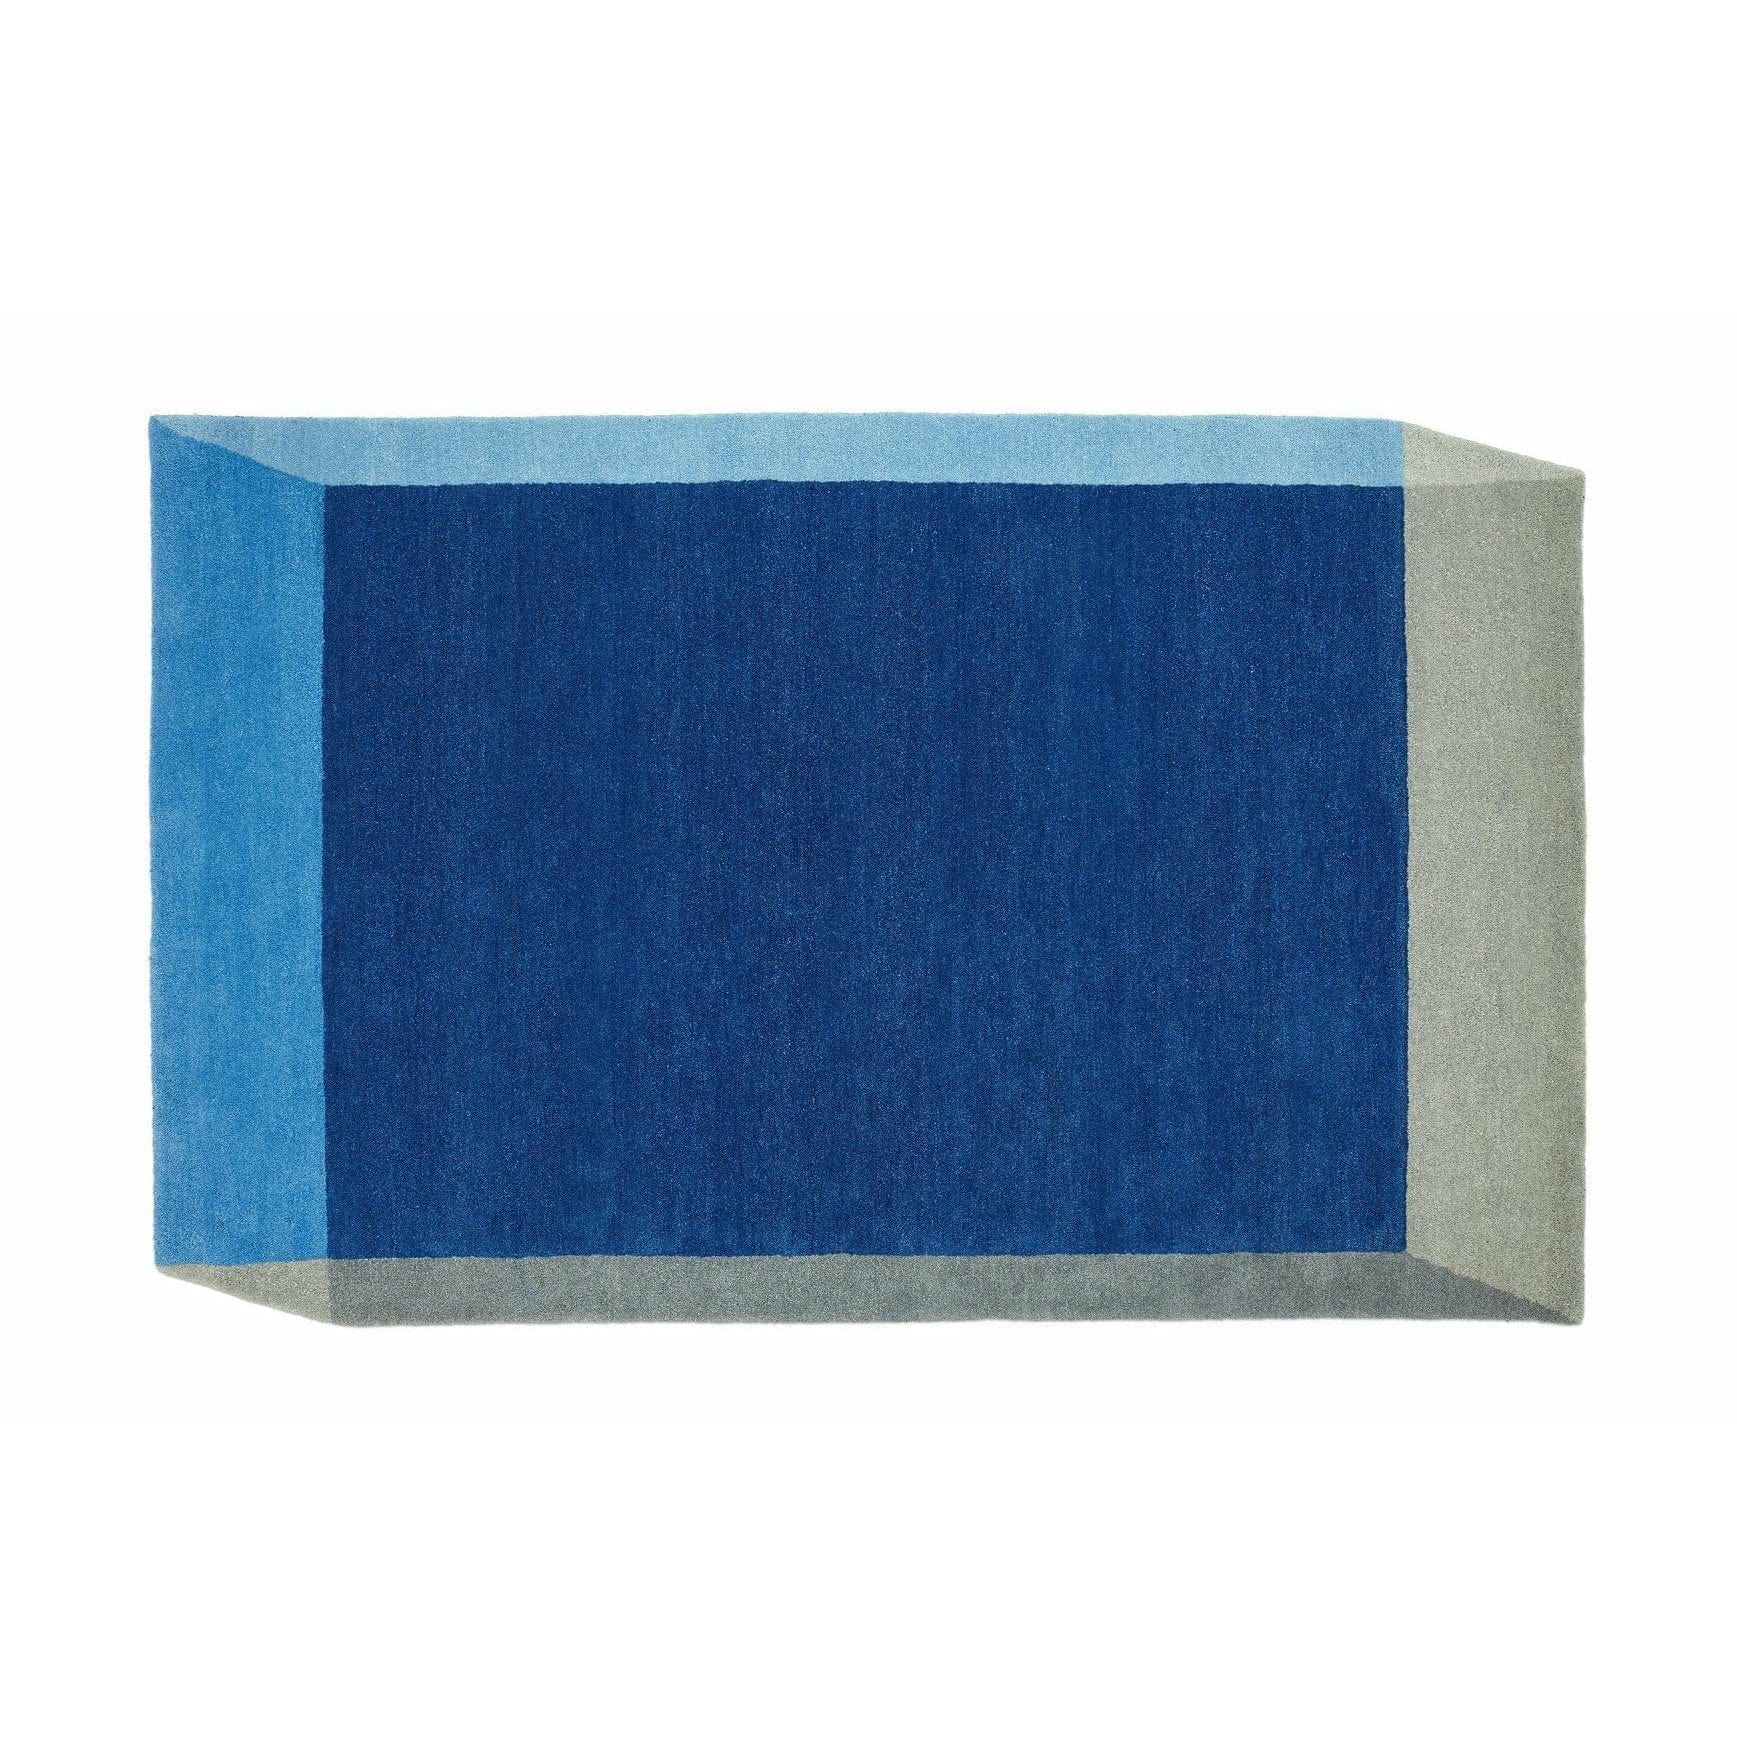 PUIK Iso matta rektangulär, blå